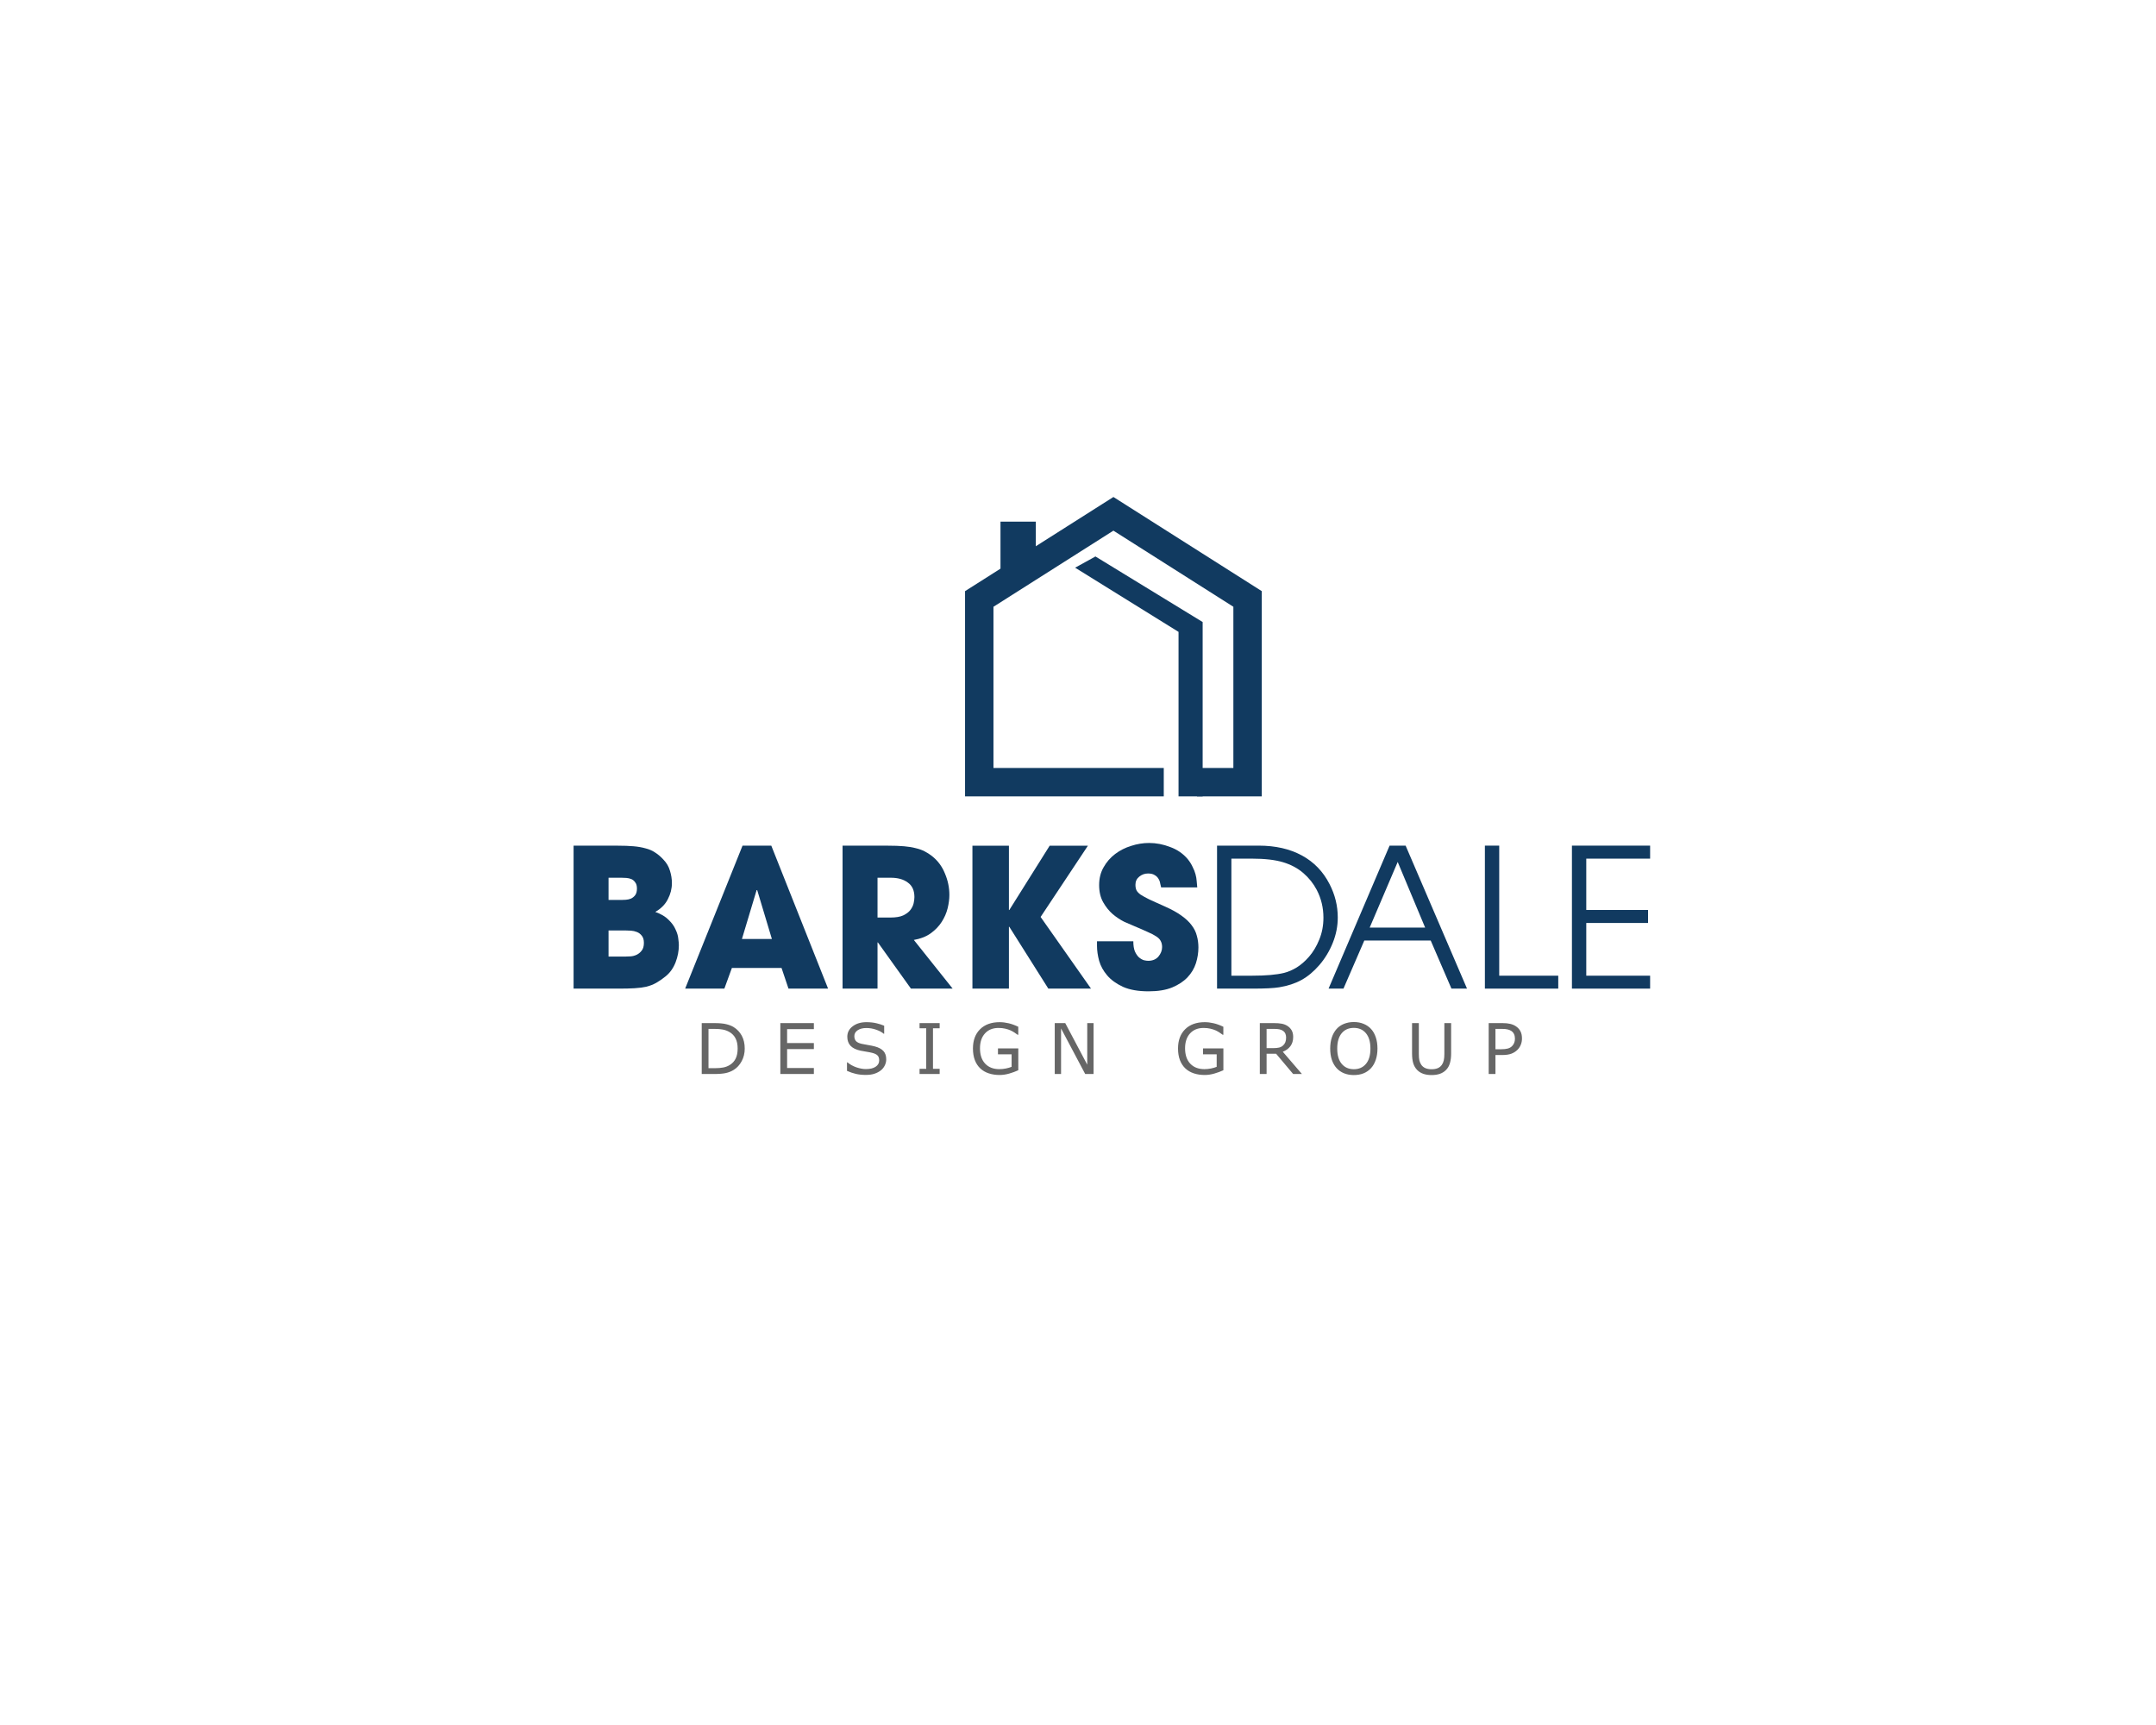 Logo Design Contest for BARKSDALE DESIGN GROUP | Hatchwise